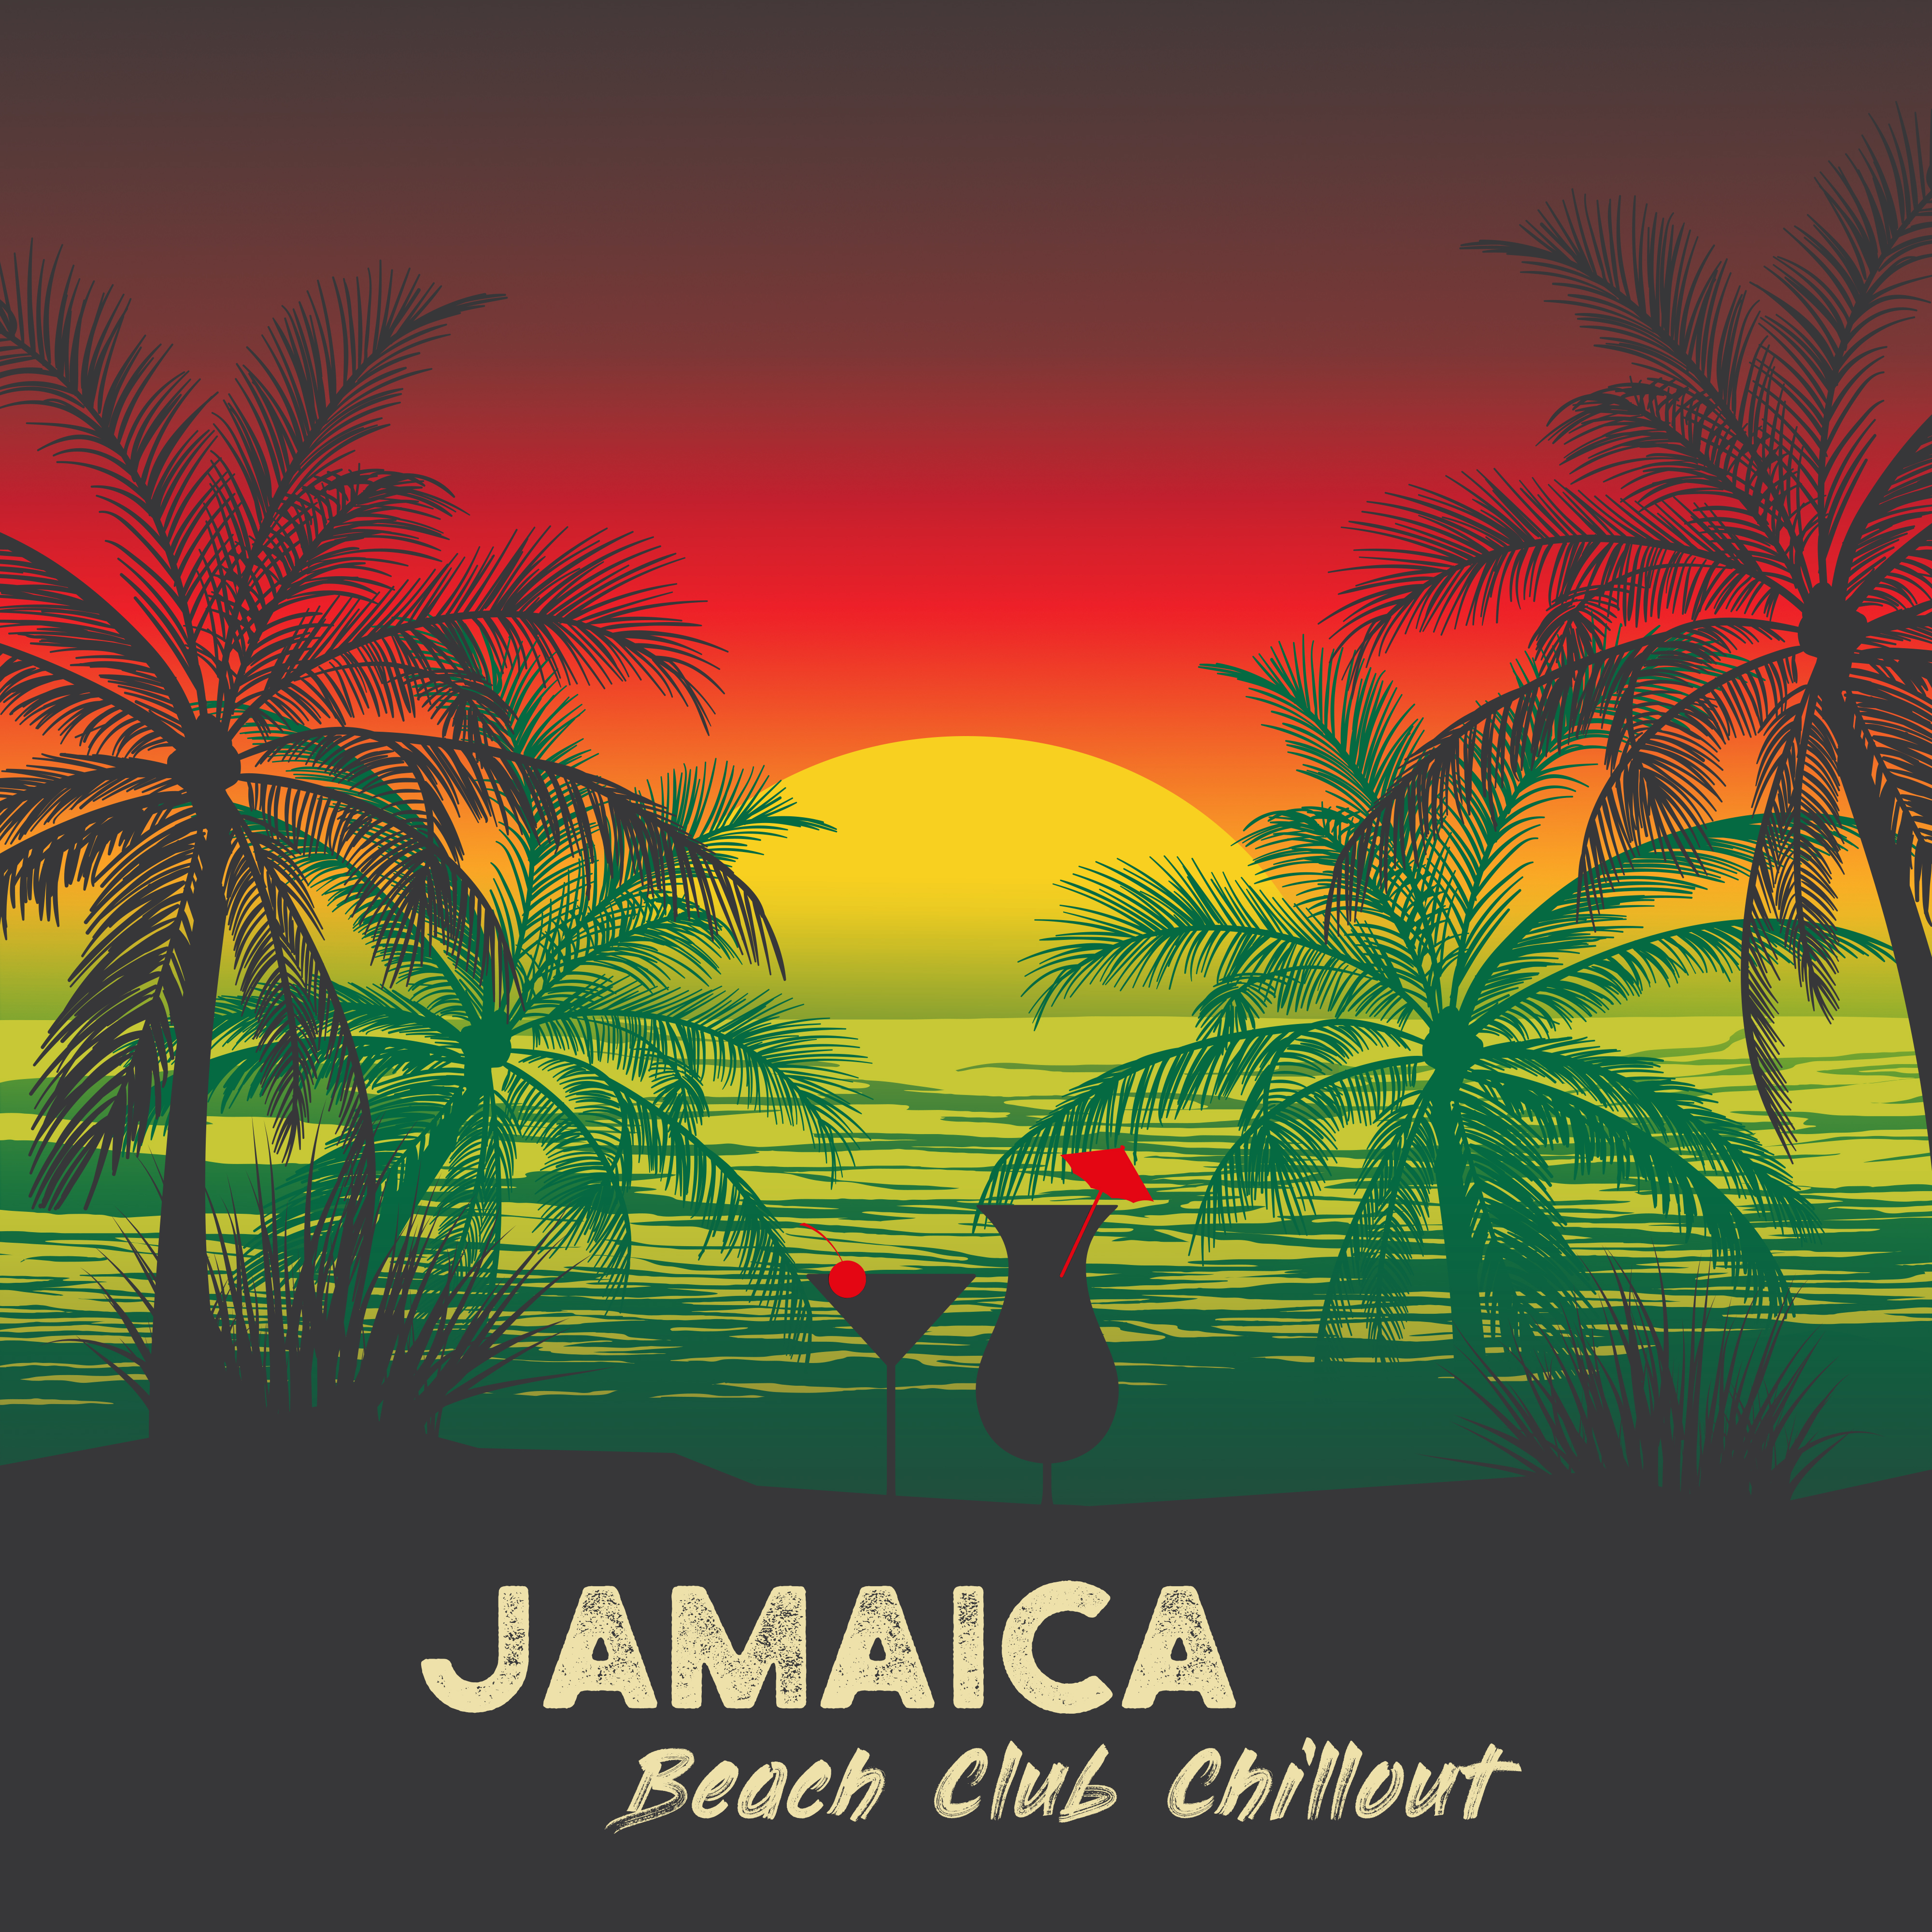 Jamaica Beach Club Chillout